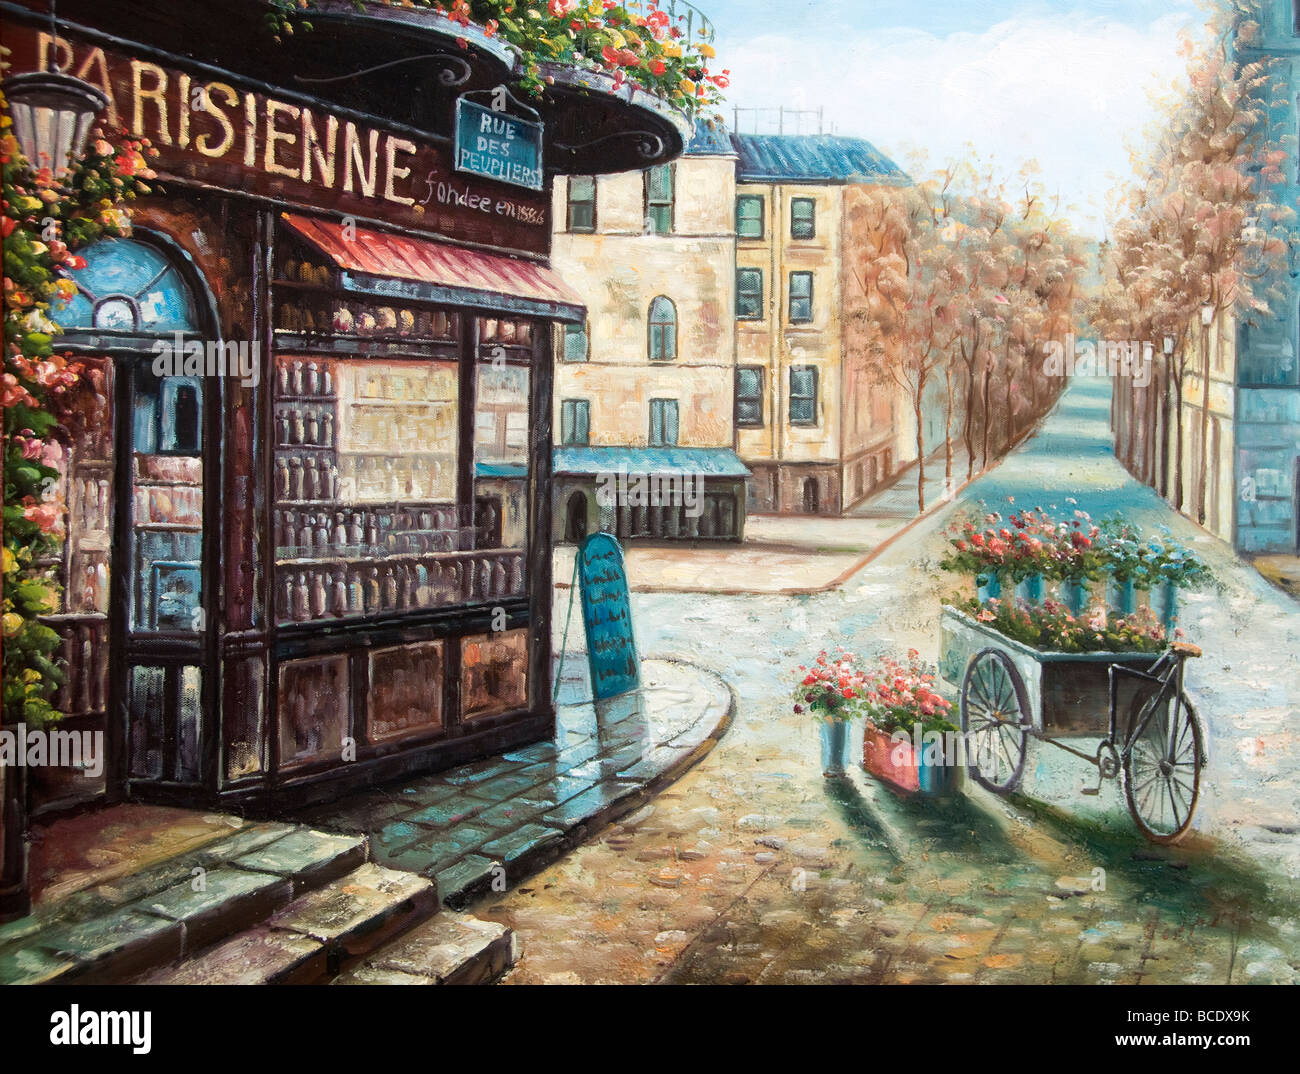 Place du Tertre Montmartre paris painter painting Stock Photo